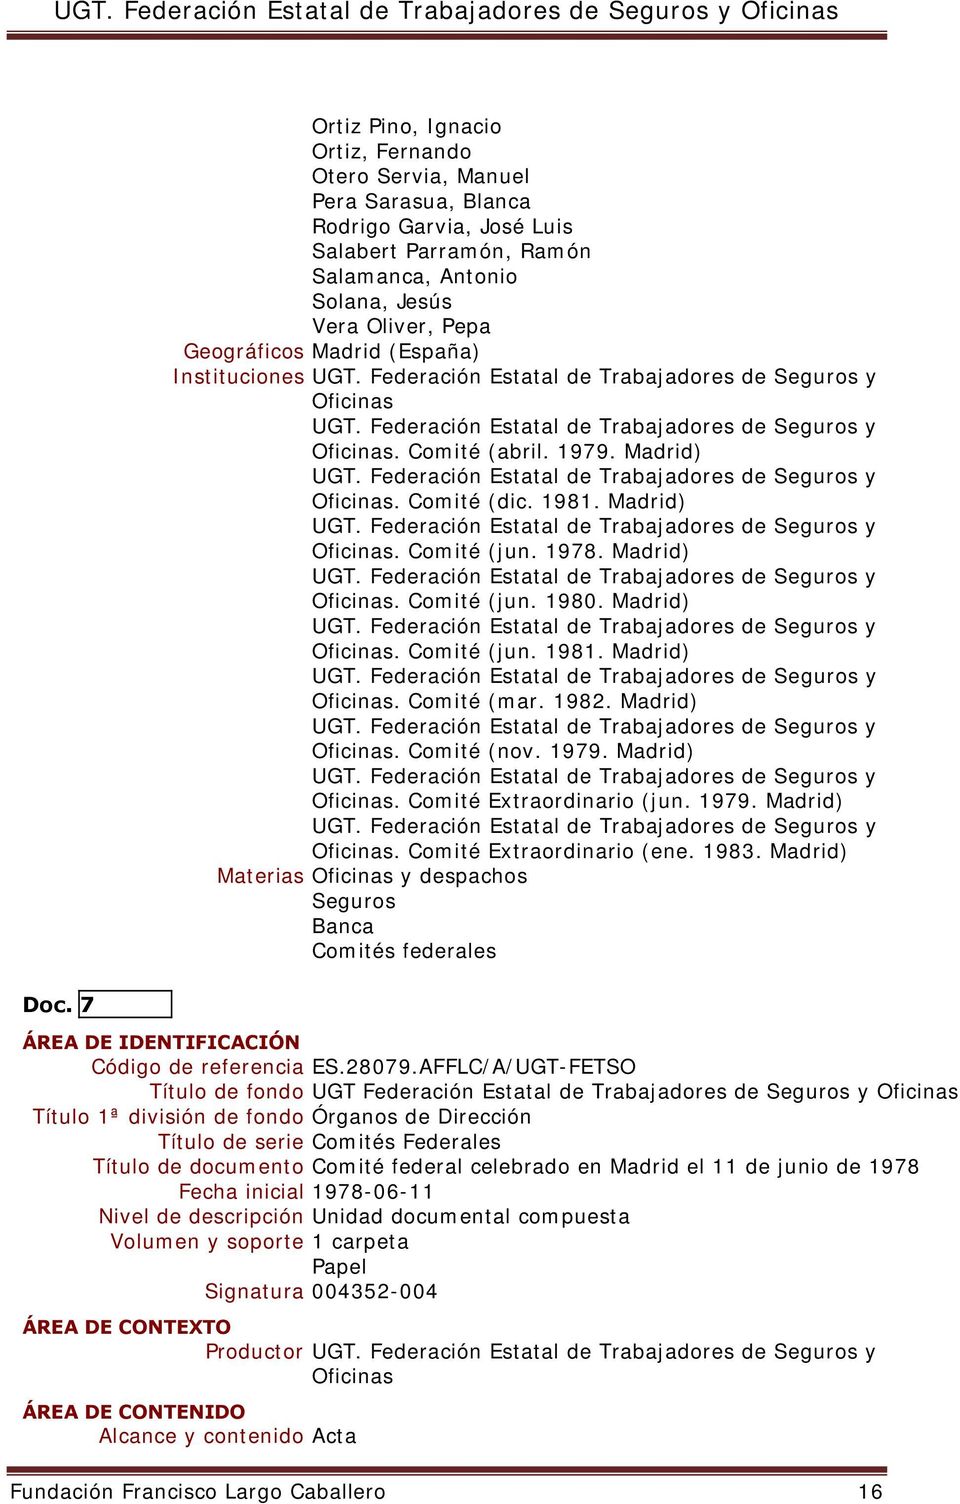 1979. Madrid). Comité Extraordinario (jun. 1979. Madrid). Comité Extraordinario (ene. 1983.